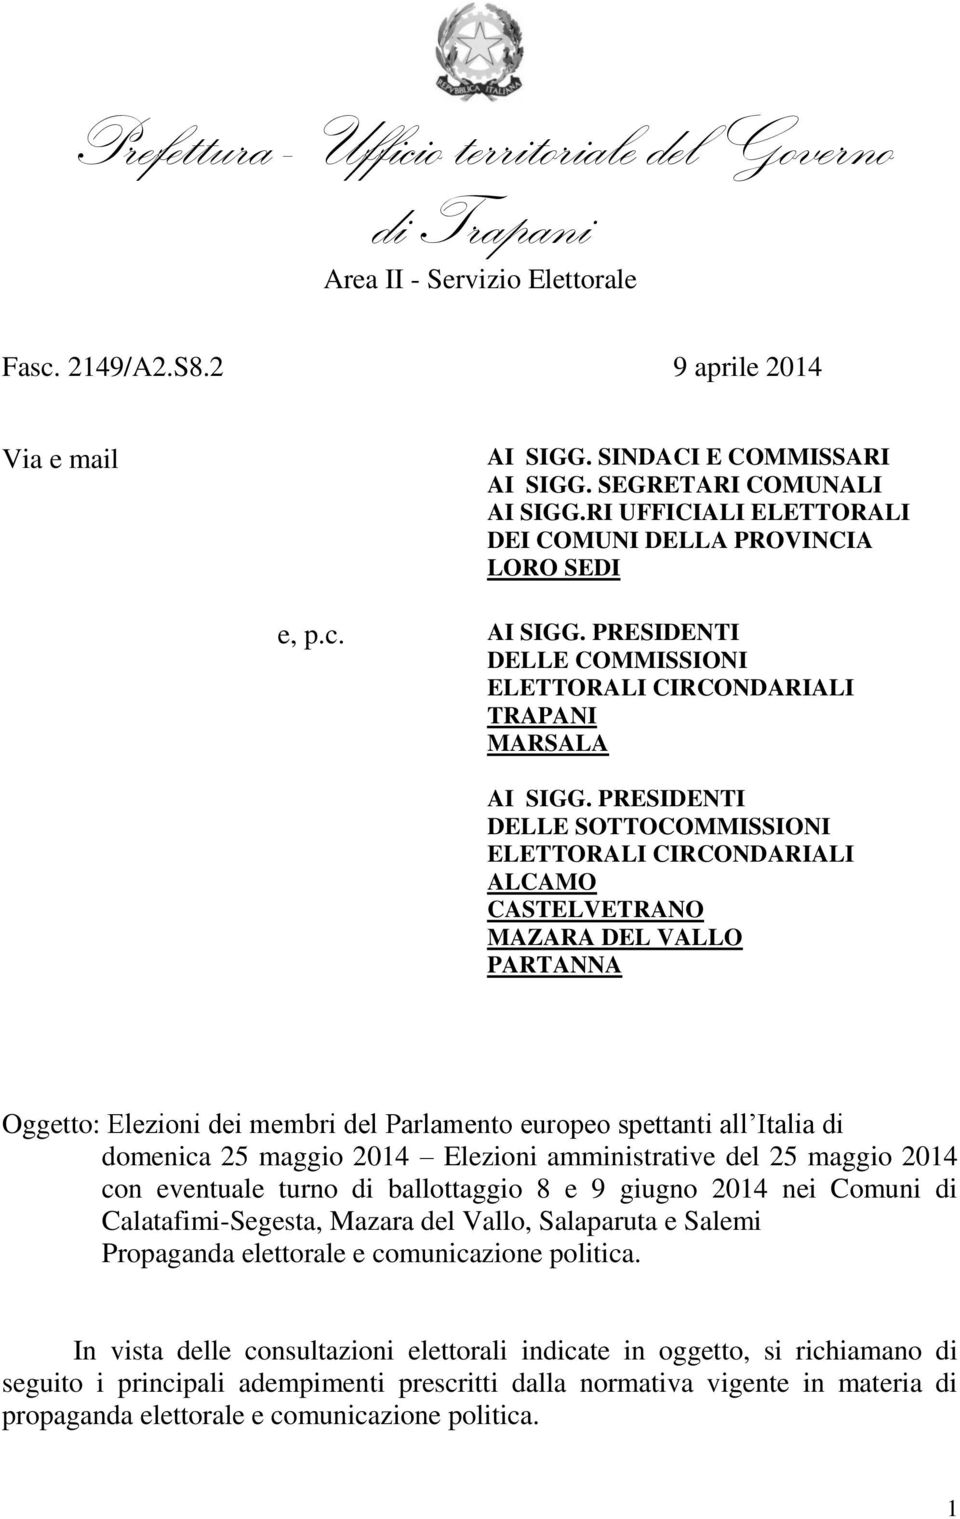 maggio 2014 Elezioni amministrative del 25 maggio 2014 con eventuale turno di ballottaggio 8 e 9 giugno 2014 nei Comuni di Calatafimi-Segesta, Mazara del Vallo, Salaparuta e Salemi Propaganda